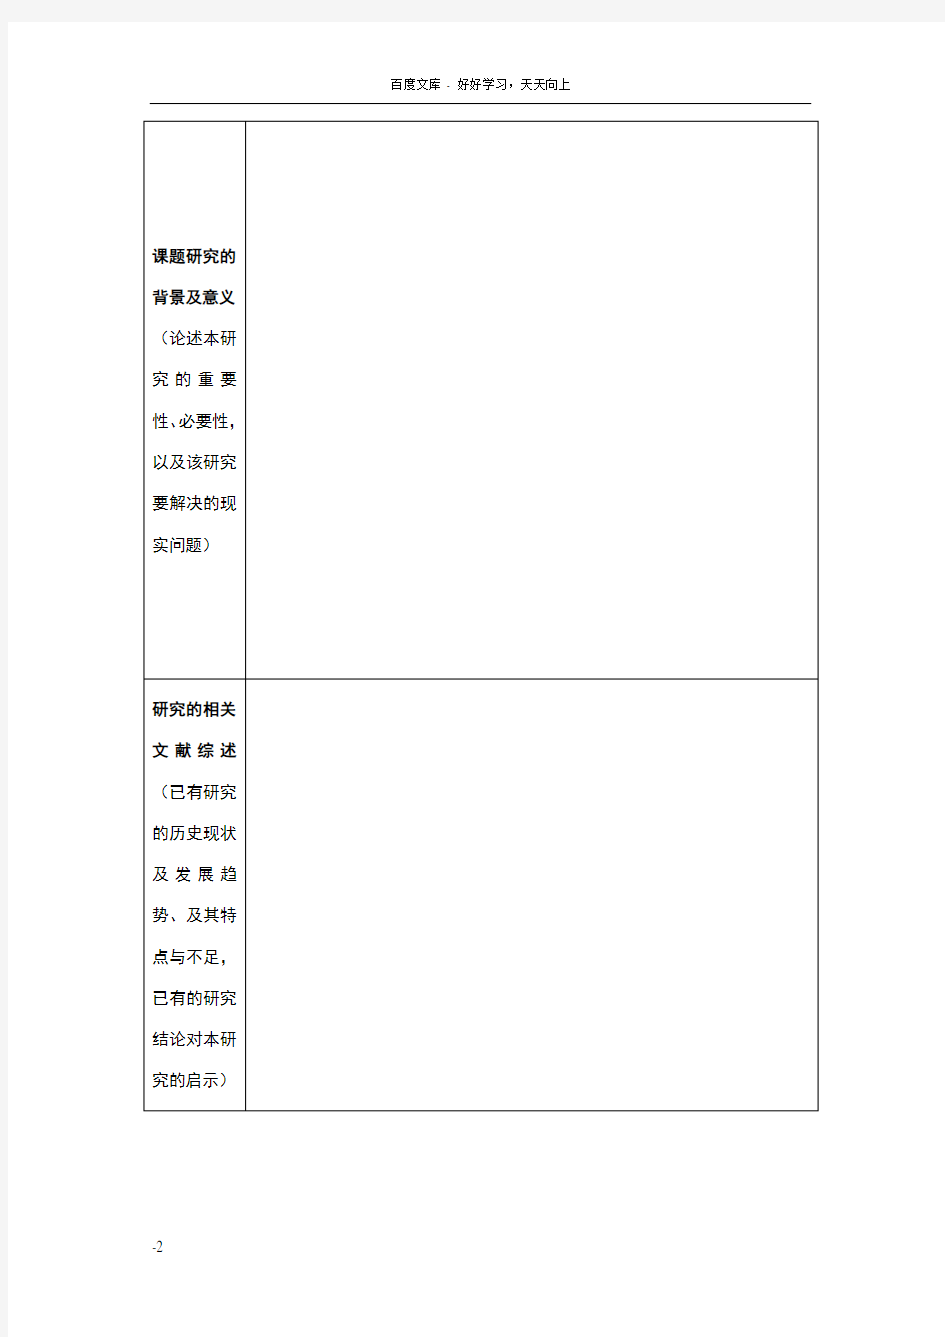 南京市教育科学规划“个人课题”申报表填写示例